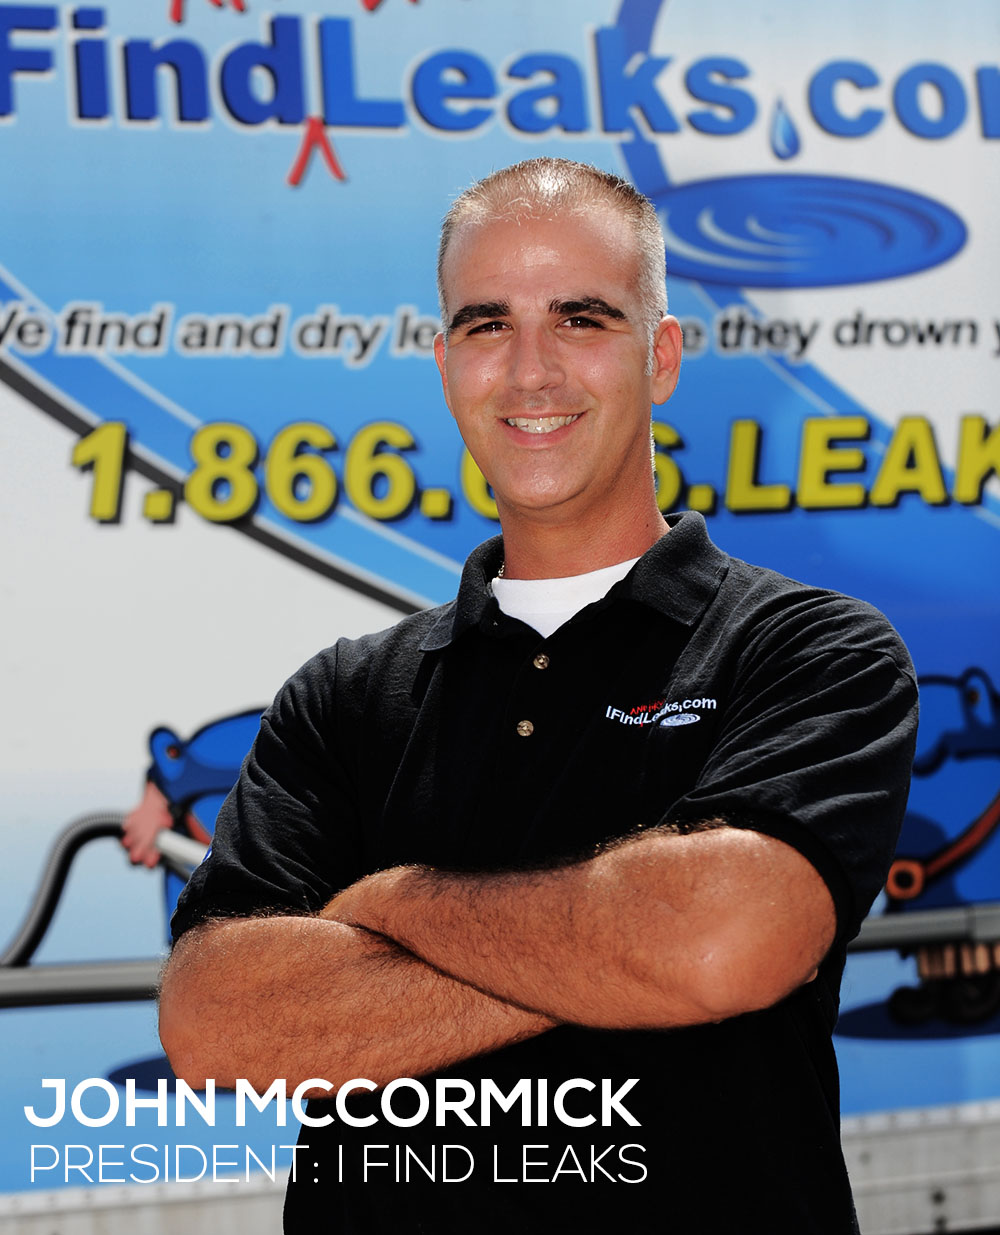 John McCormick President of I FInd Leaks